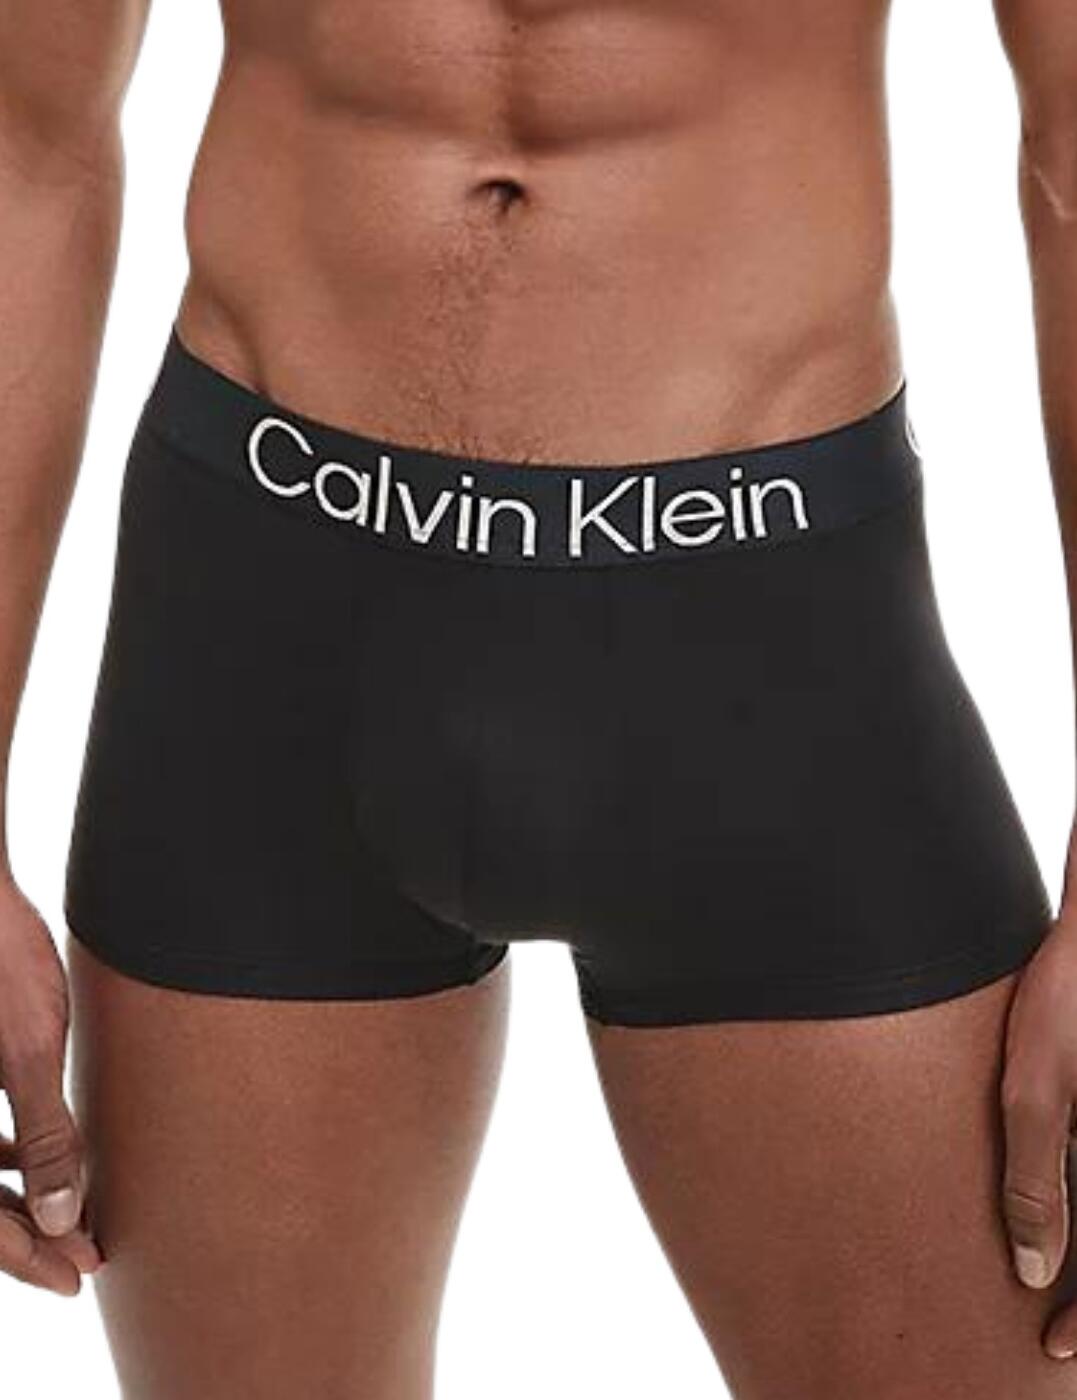 Calvin Klein New CK One White Blue Logo Low Rise Trunk Underwear